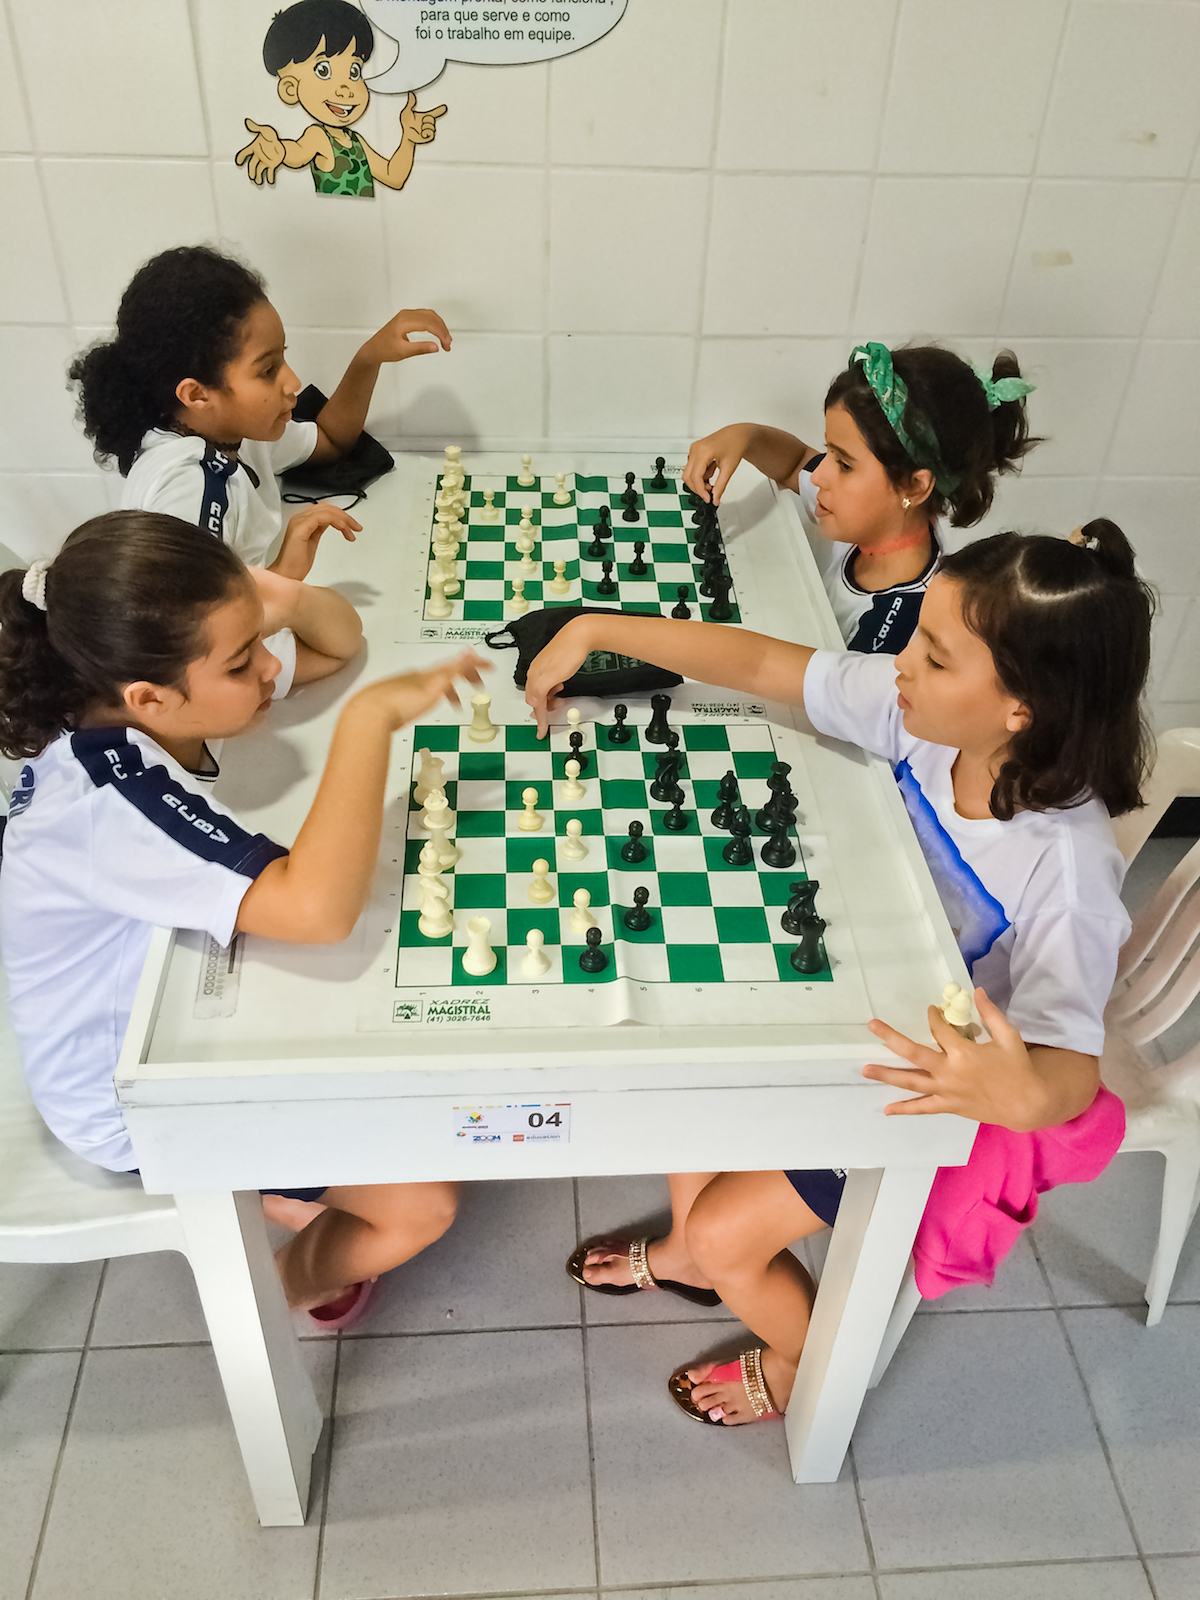 História Oculta - Xadrez é um esporte, também considerado uma arte e uma  ciência. Pode ser classificado como um jogo de tabuleiro de natureza  recreativa ou competitiva para dois jogadores, sendo também